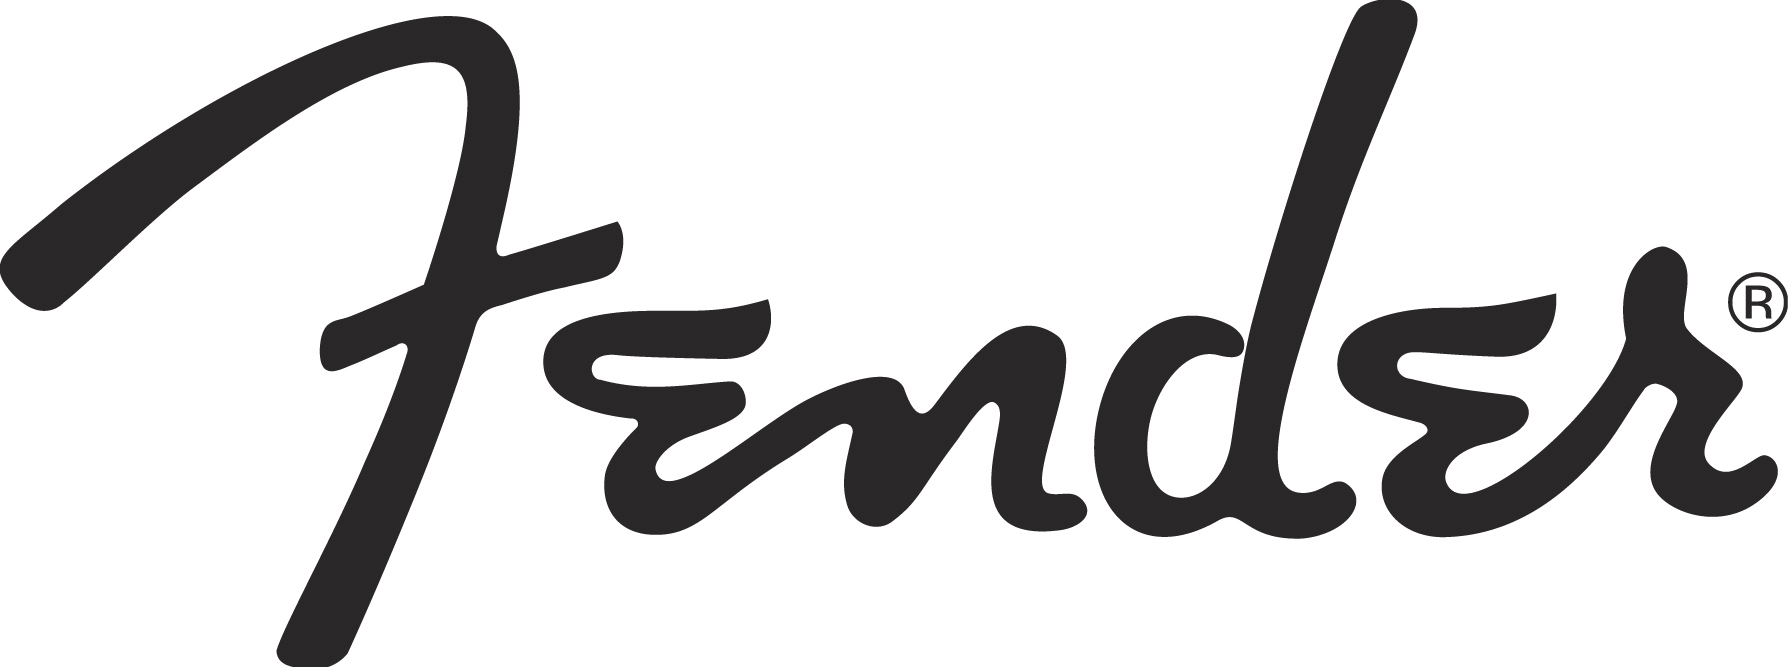 Fender guitar logo